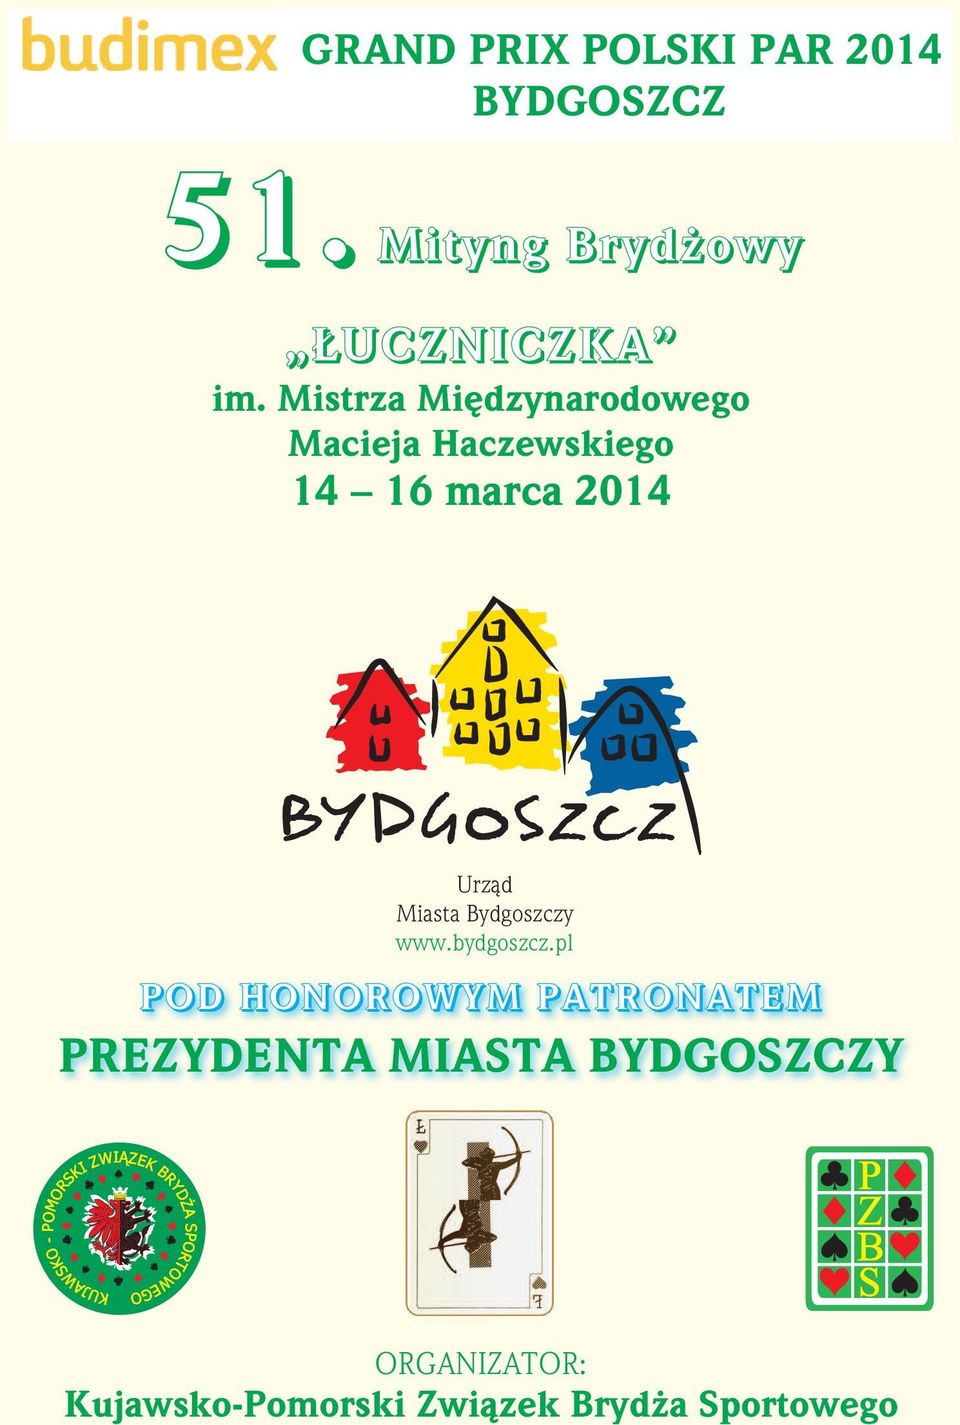 Miasta Bydgoszczy www.bydgoszcz.